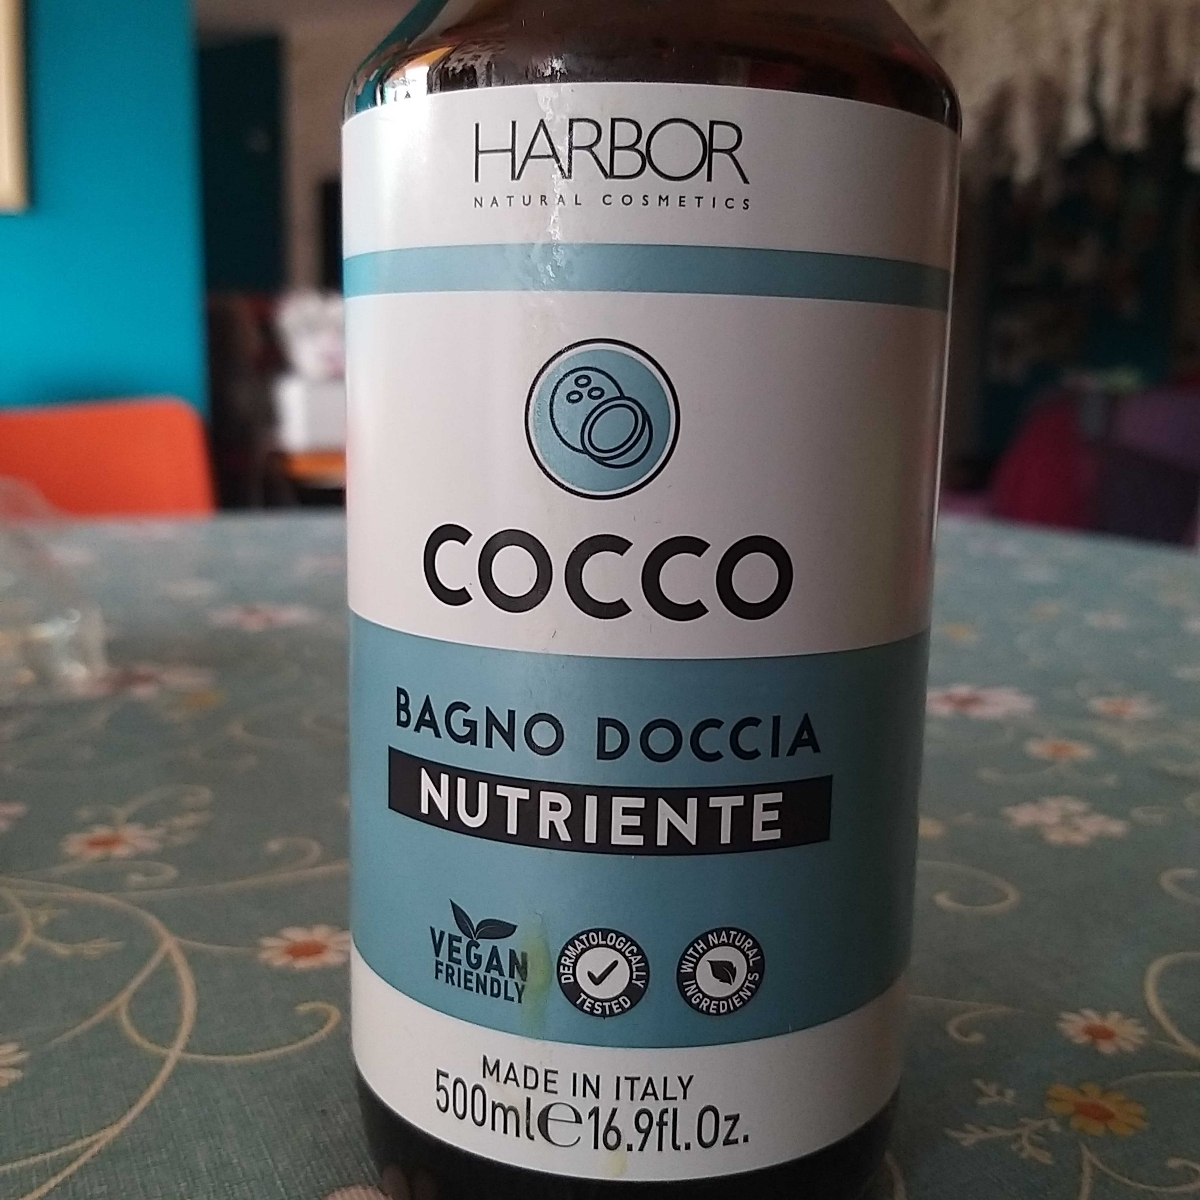 Harbor Natural Cosmetics Cocco Bagno Doccia Nutriente Review | abillion